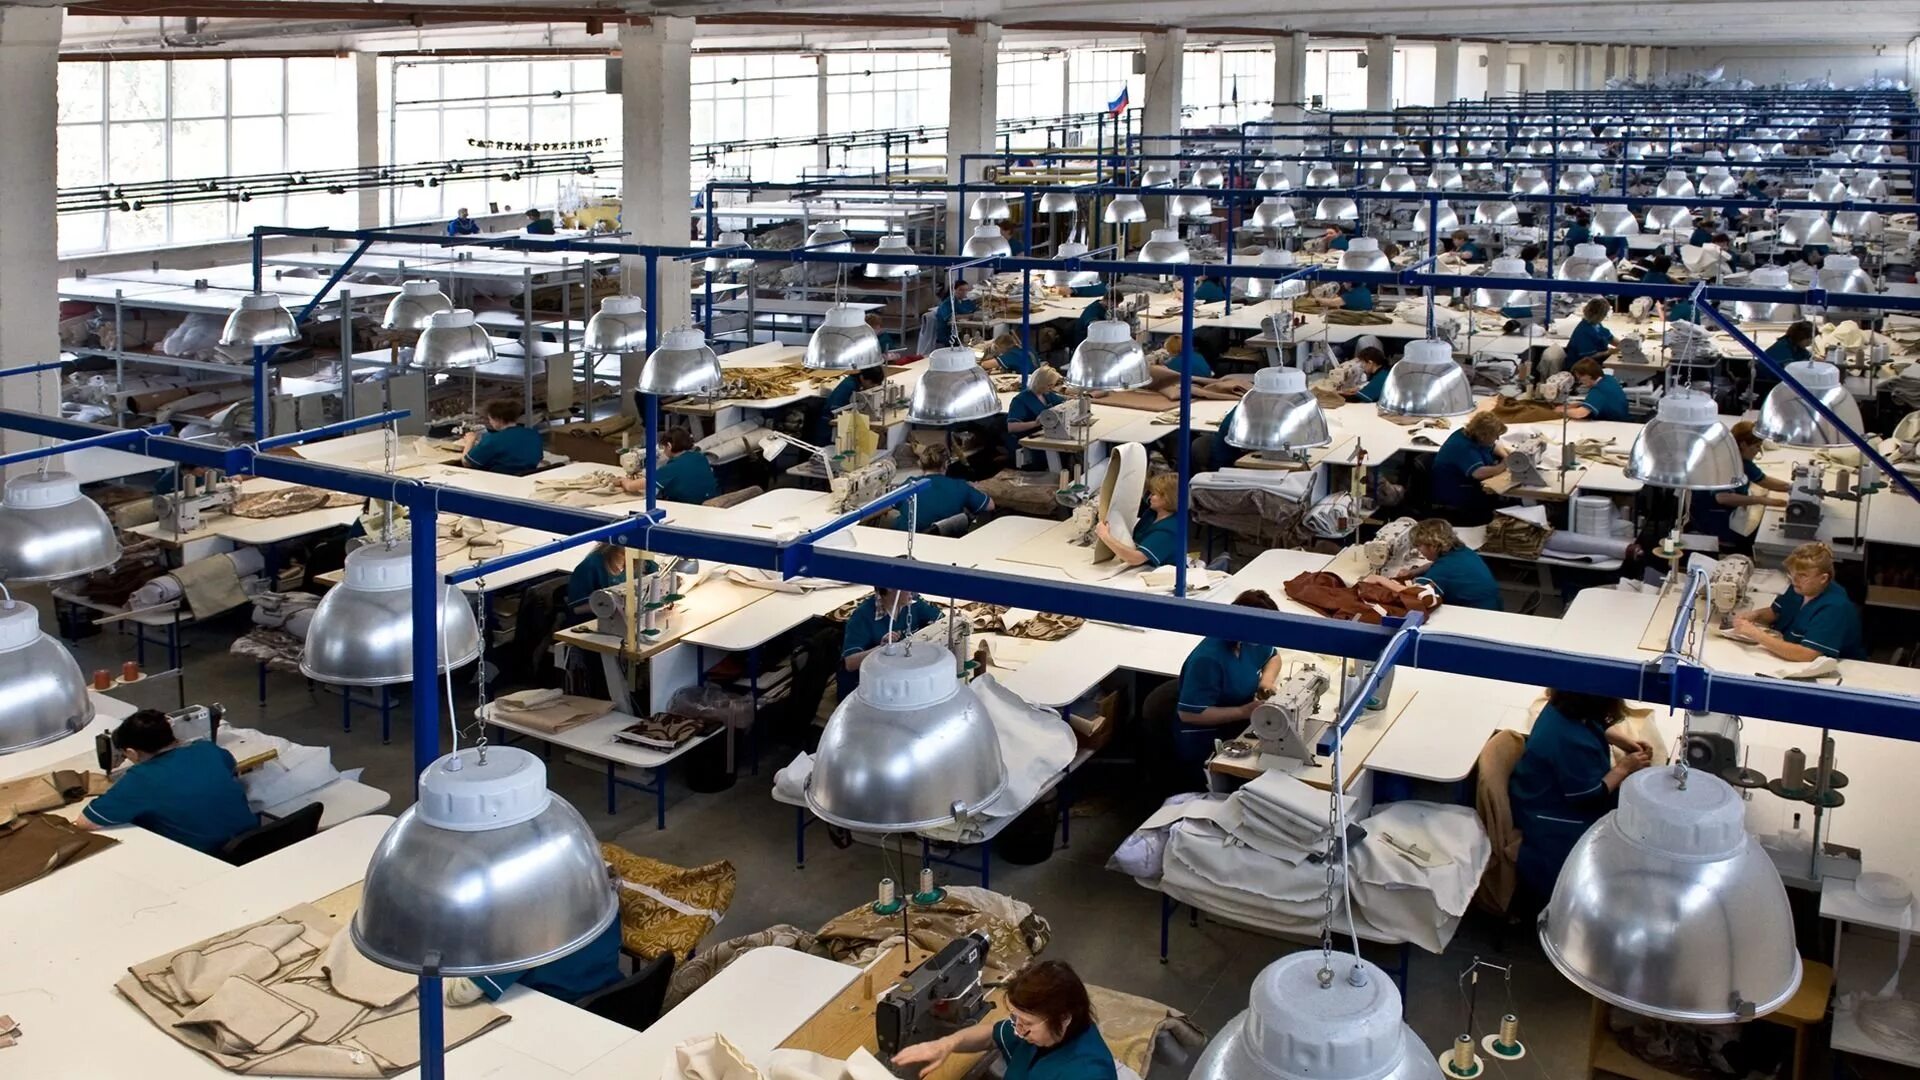 Фабричная предприятия. Фабрика - Ткацкая фабрика - швейная фабрика. Швейный цех. Текстильное производство. Цех текстильной фабрики.